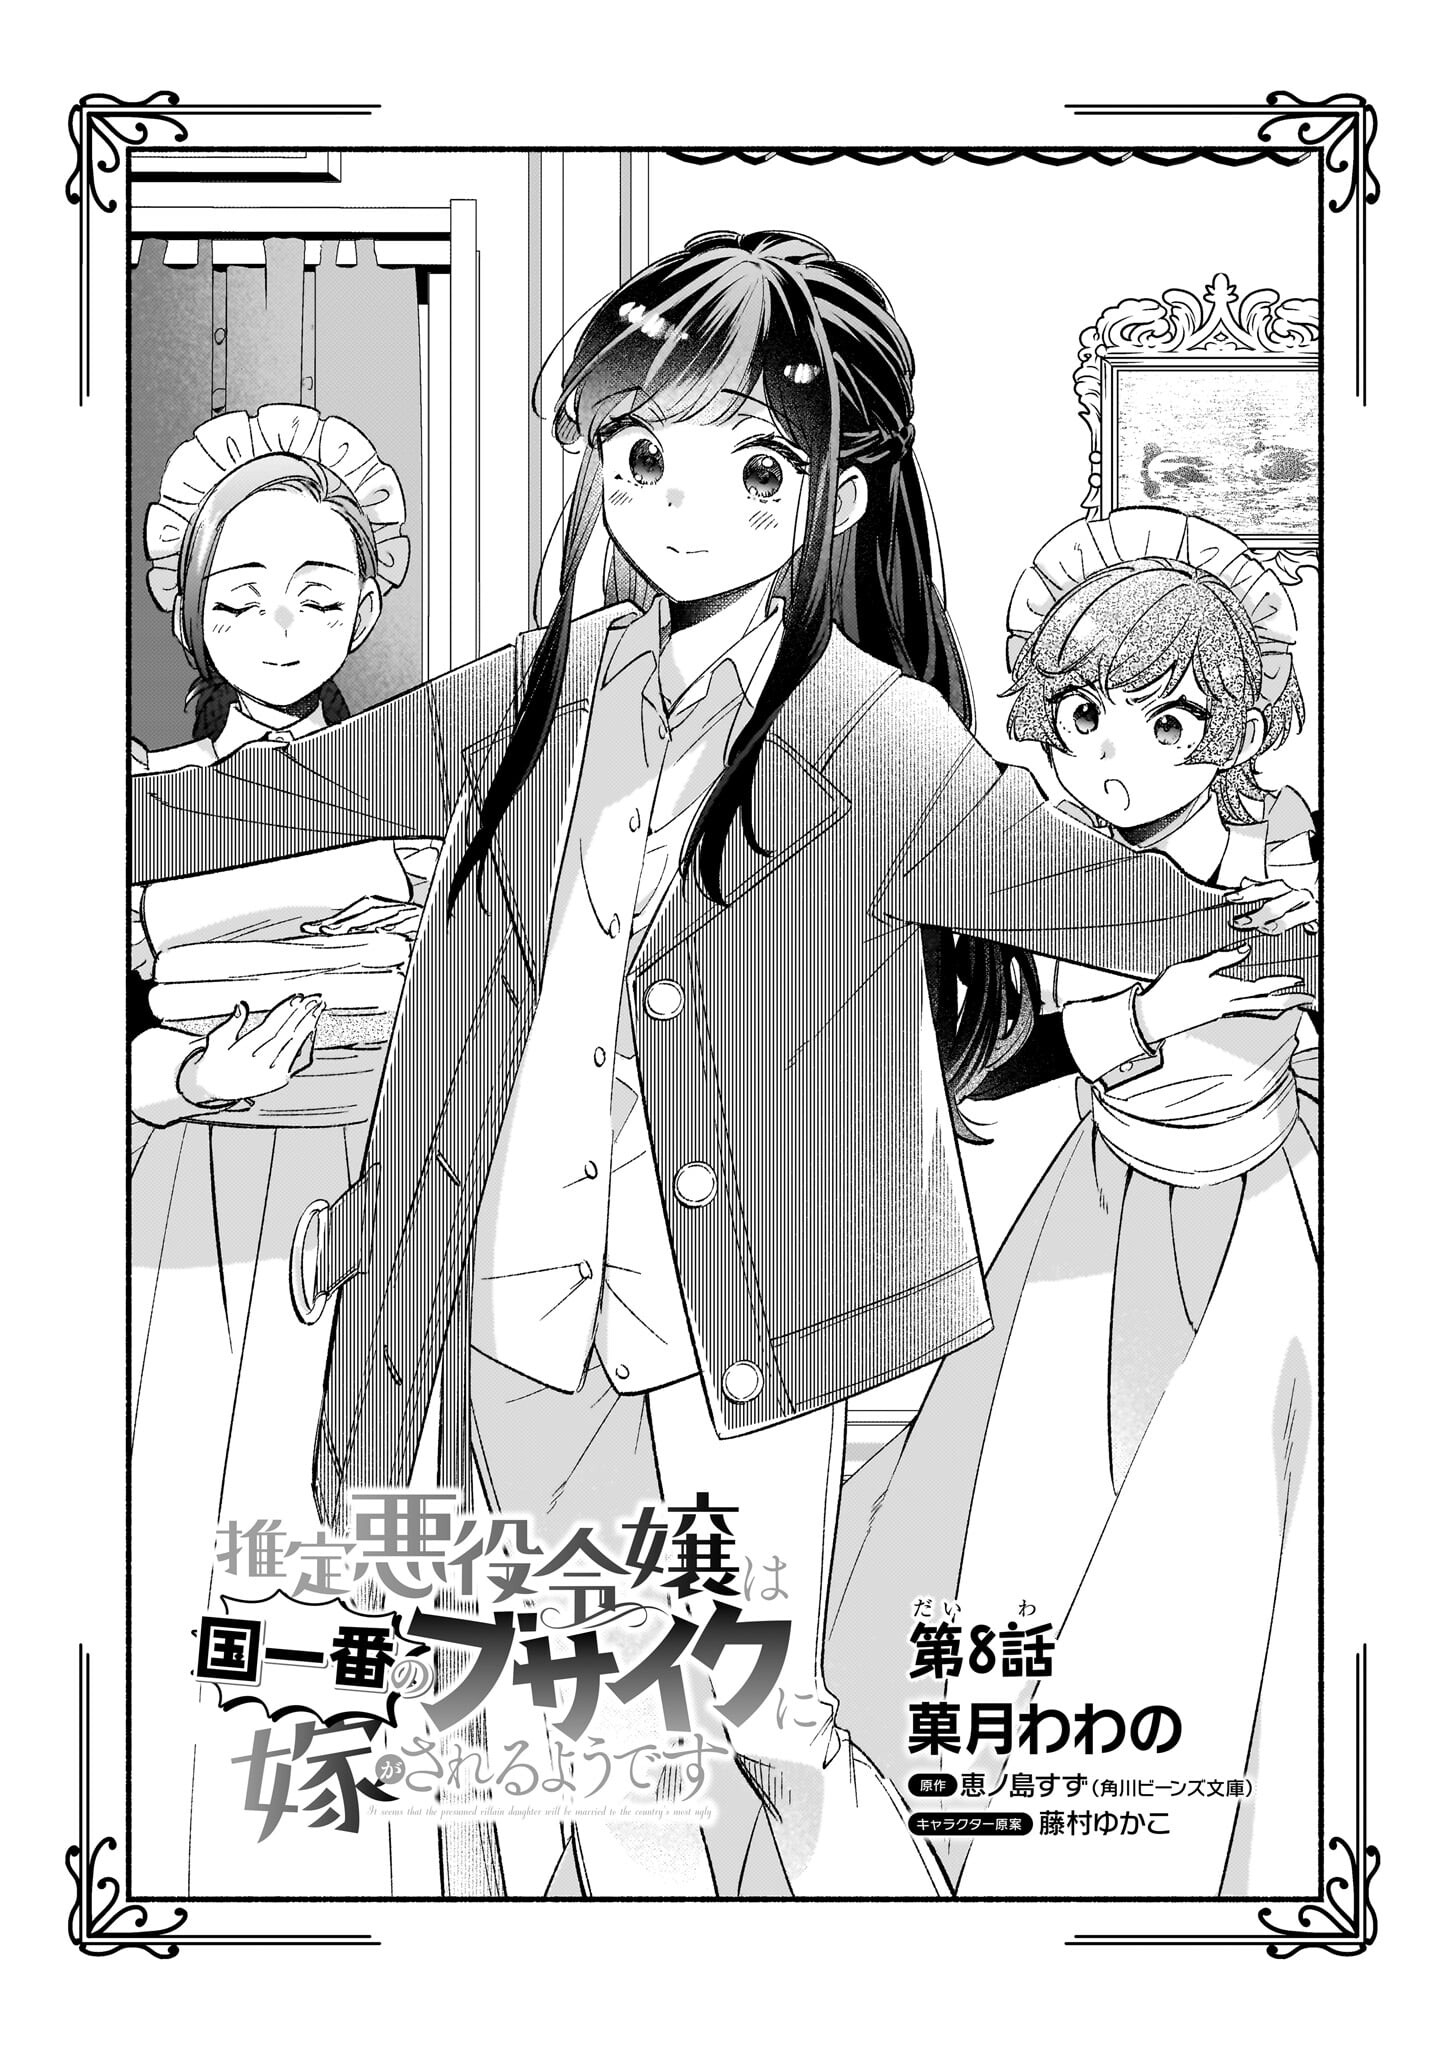 Suitei Akuyaku Reijou wa Koku Ichiban no Busaiku ni Totsugasareru you desu - Chapter 8 - Page 2